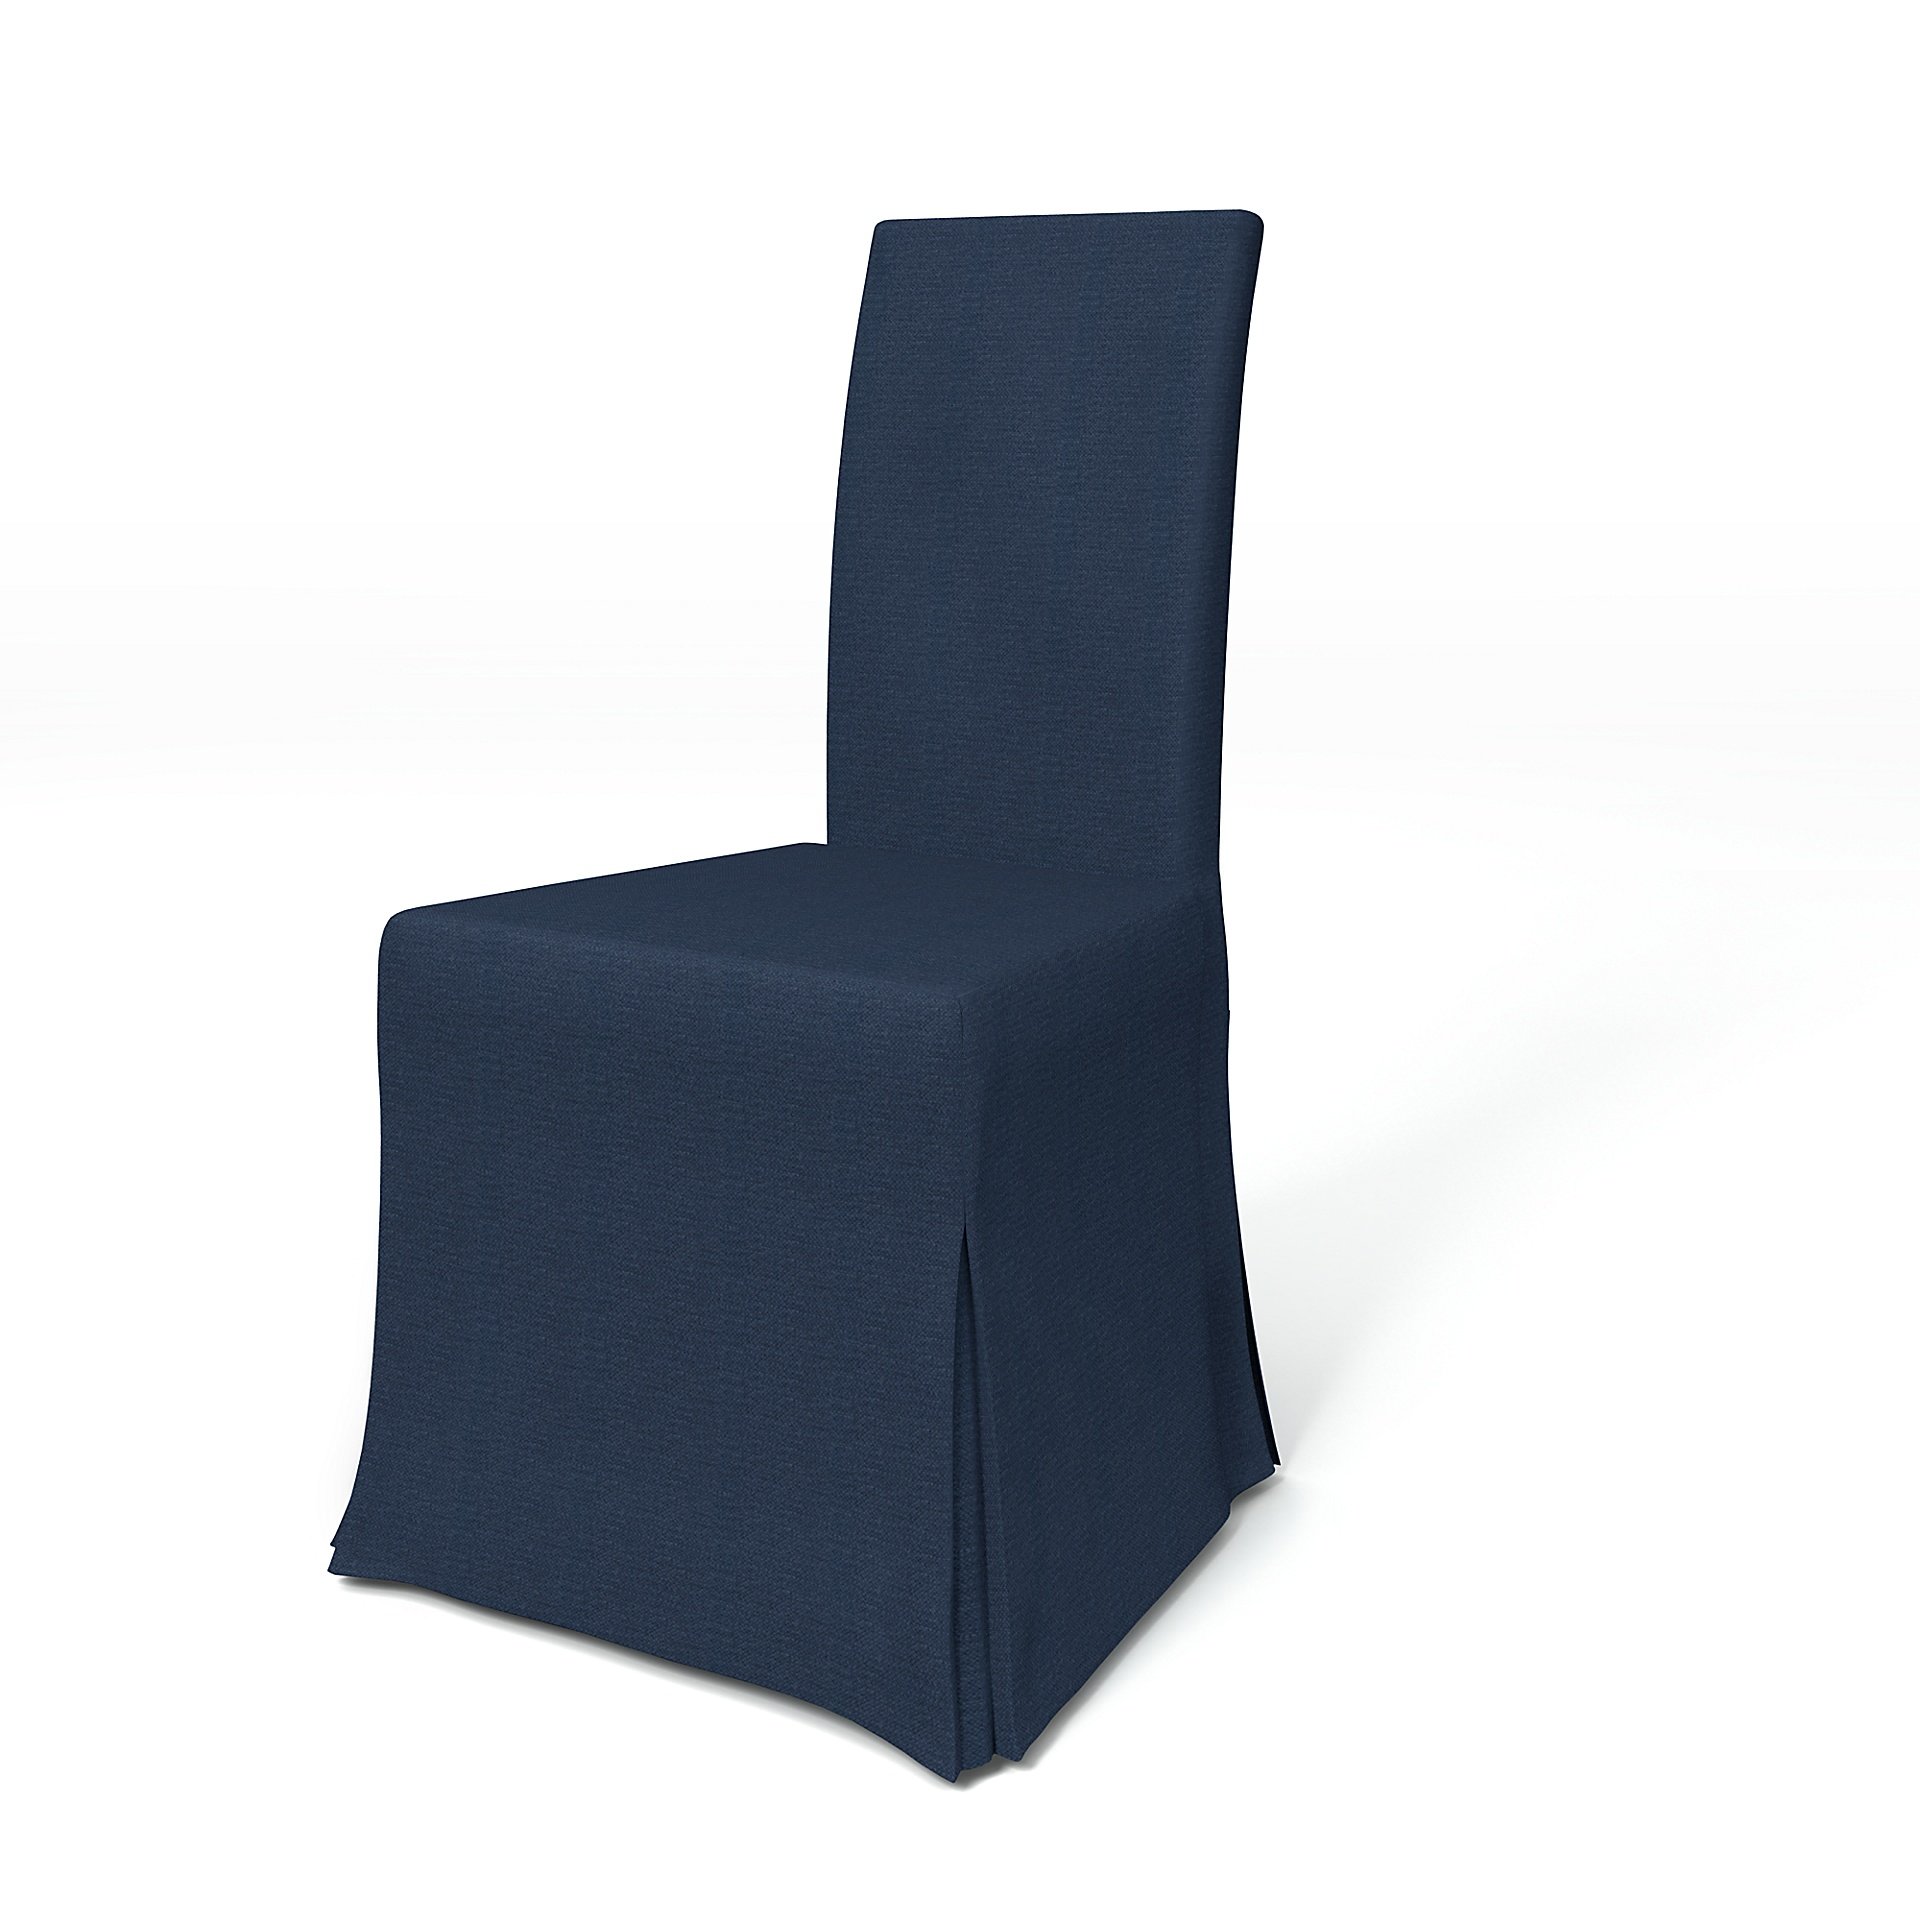 IKEA - Harry Dining Chair Cover, Navy Blue, Linen - Bemz